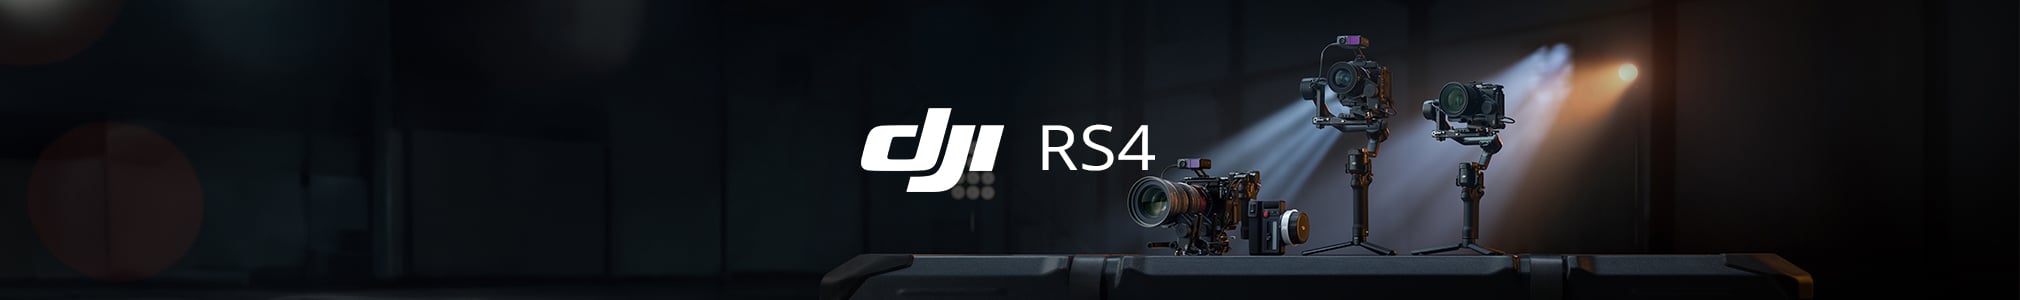 DJI RS4/RS4 Pro